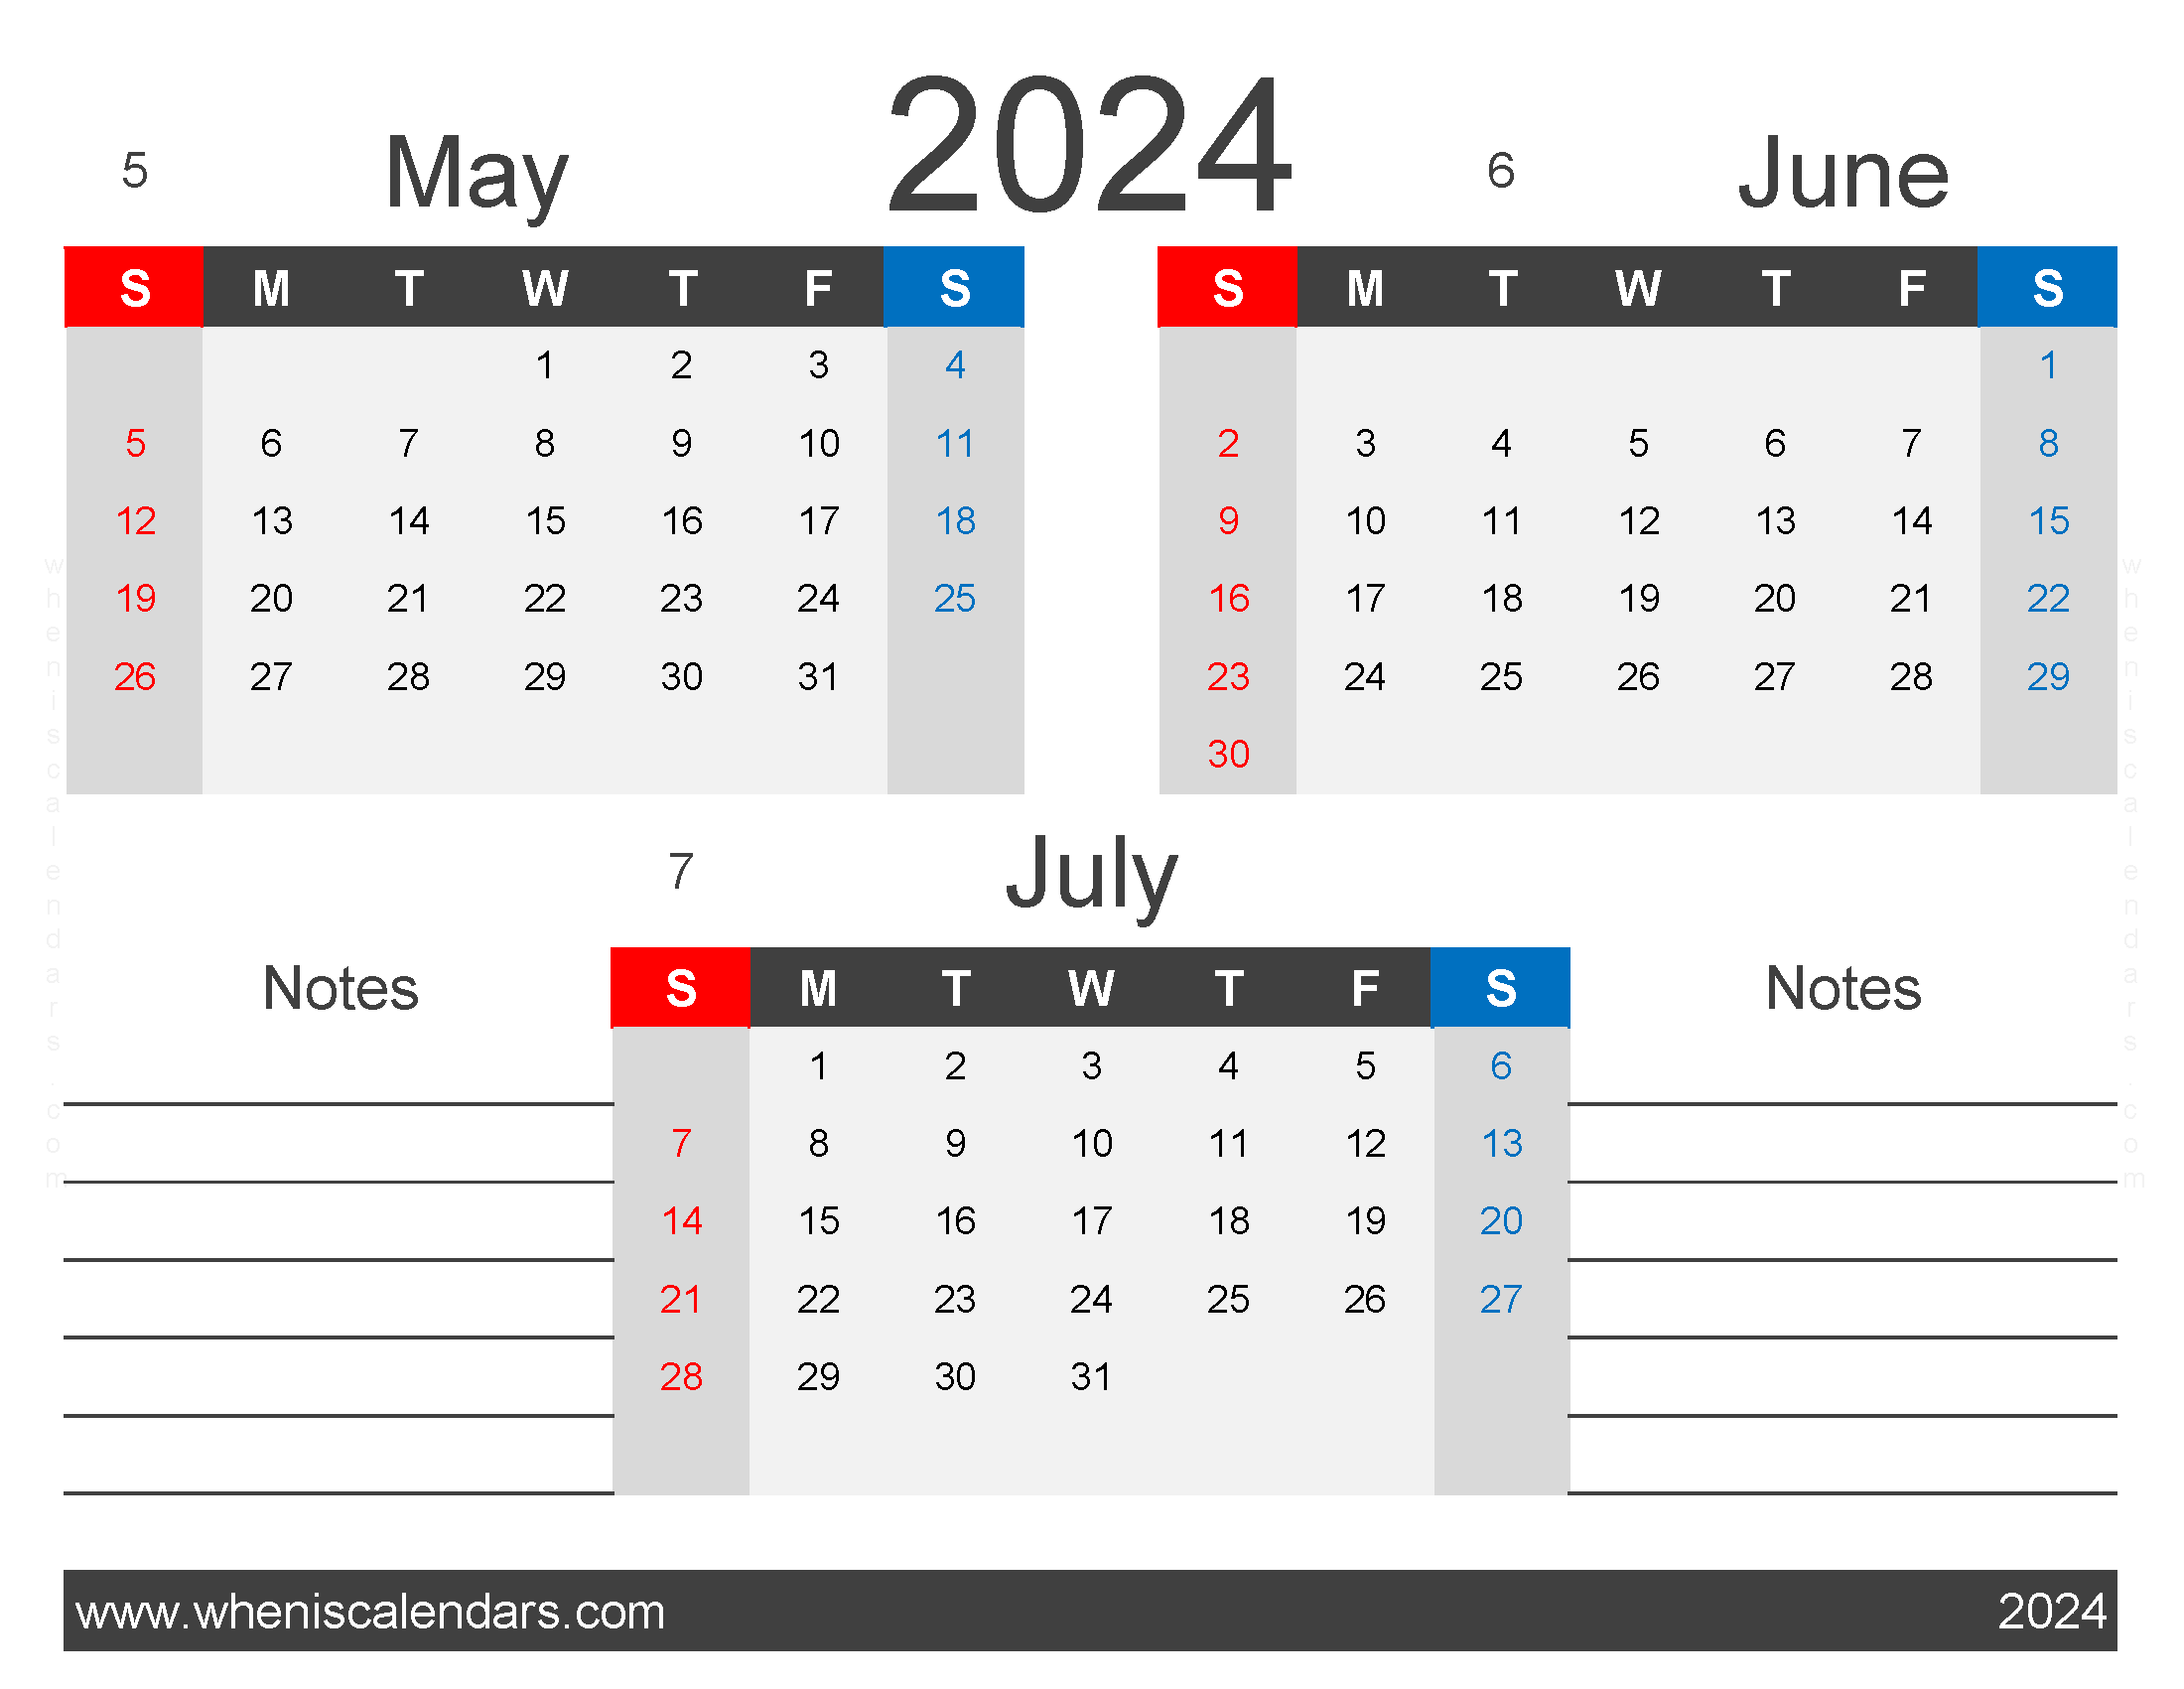 Download 2024 Calendar May Jun July MJJ424